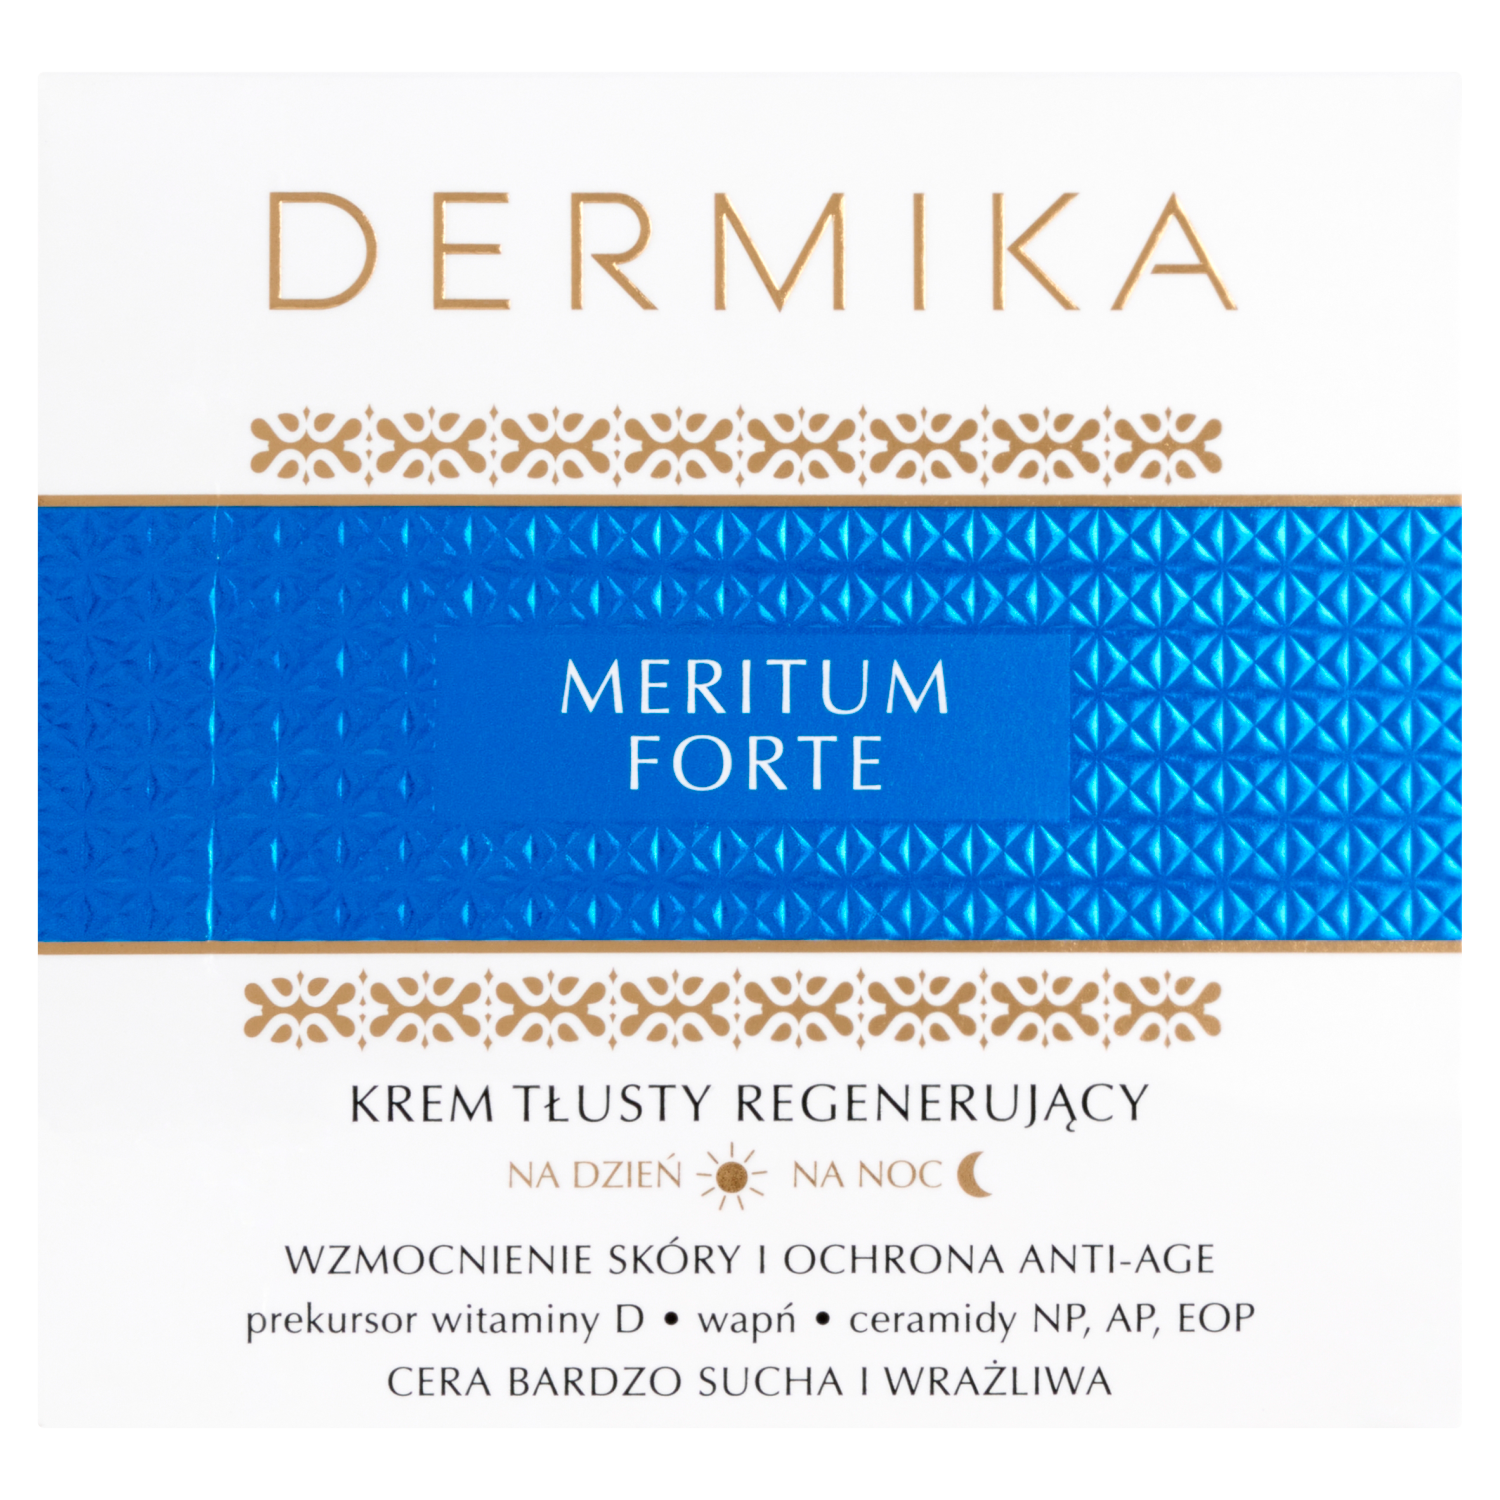 Жирный крем для лица Dermika Meritum Forte, 50 мл цена